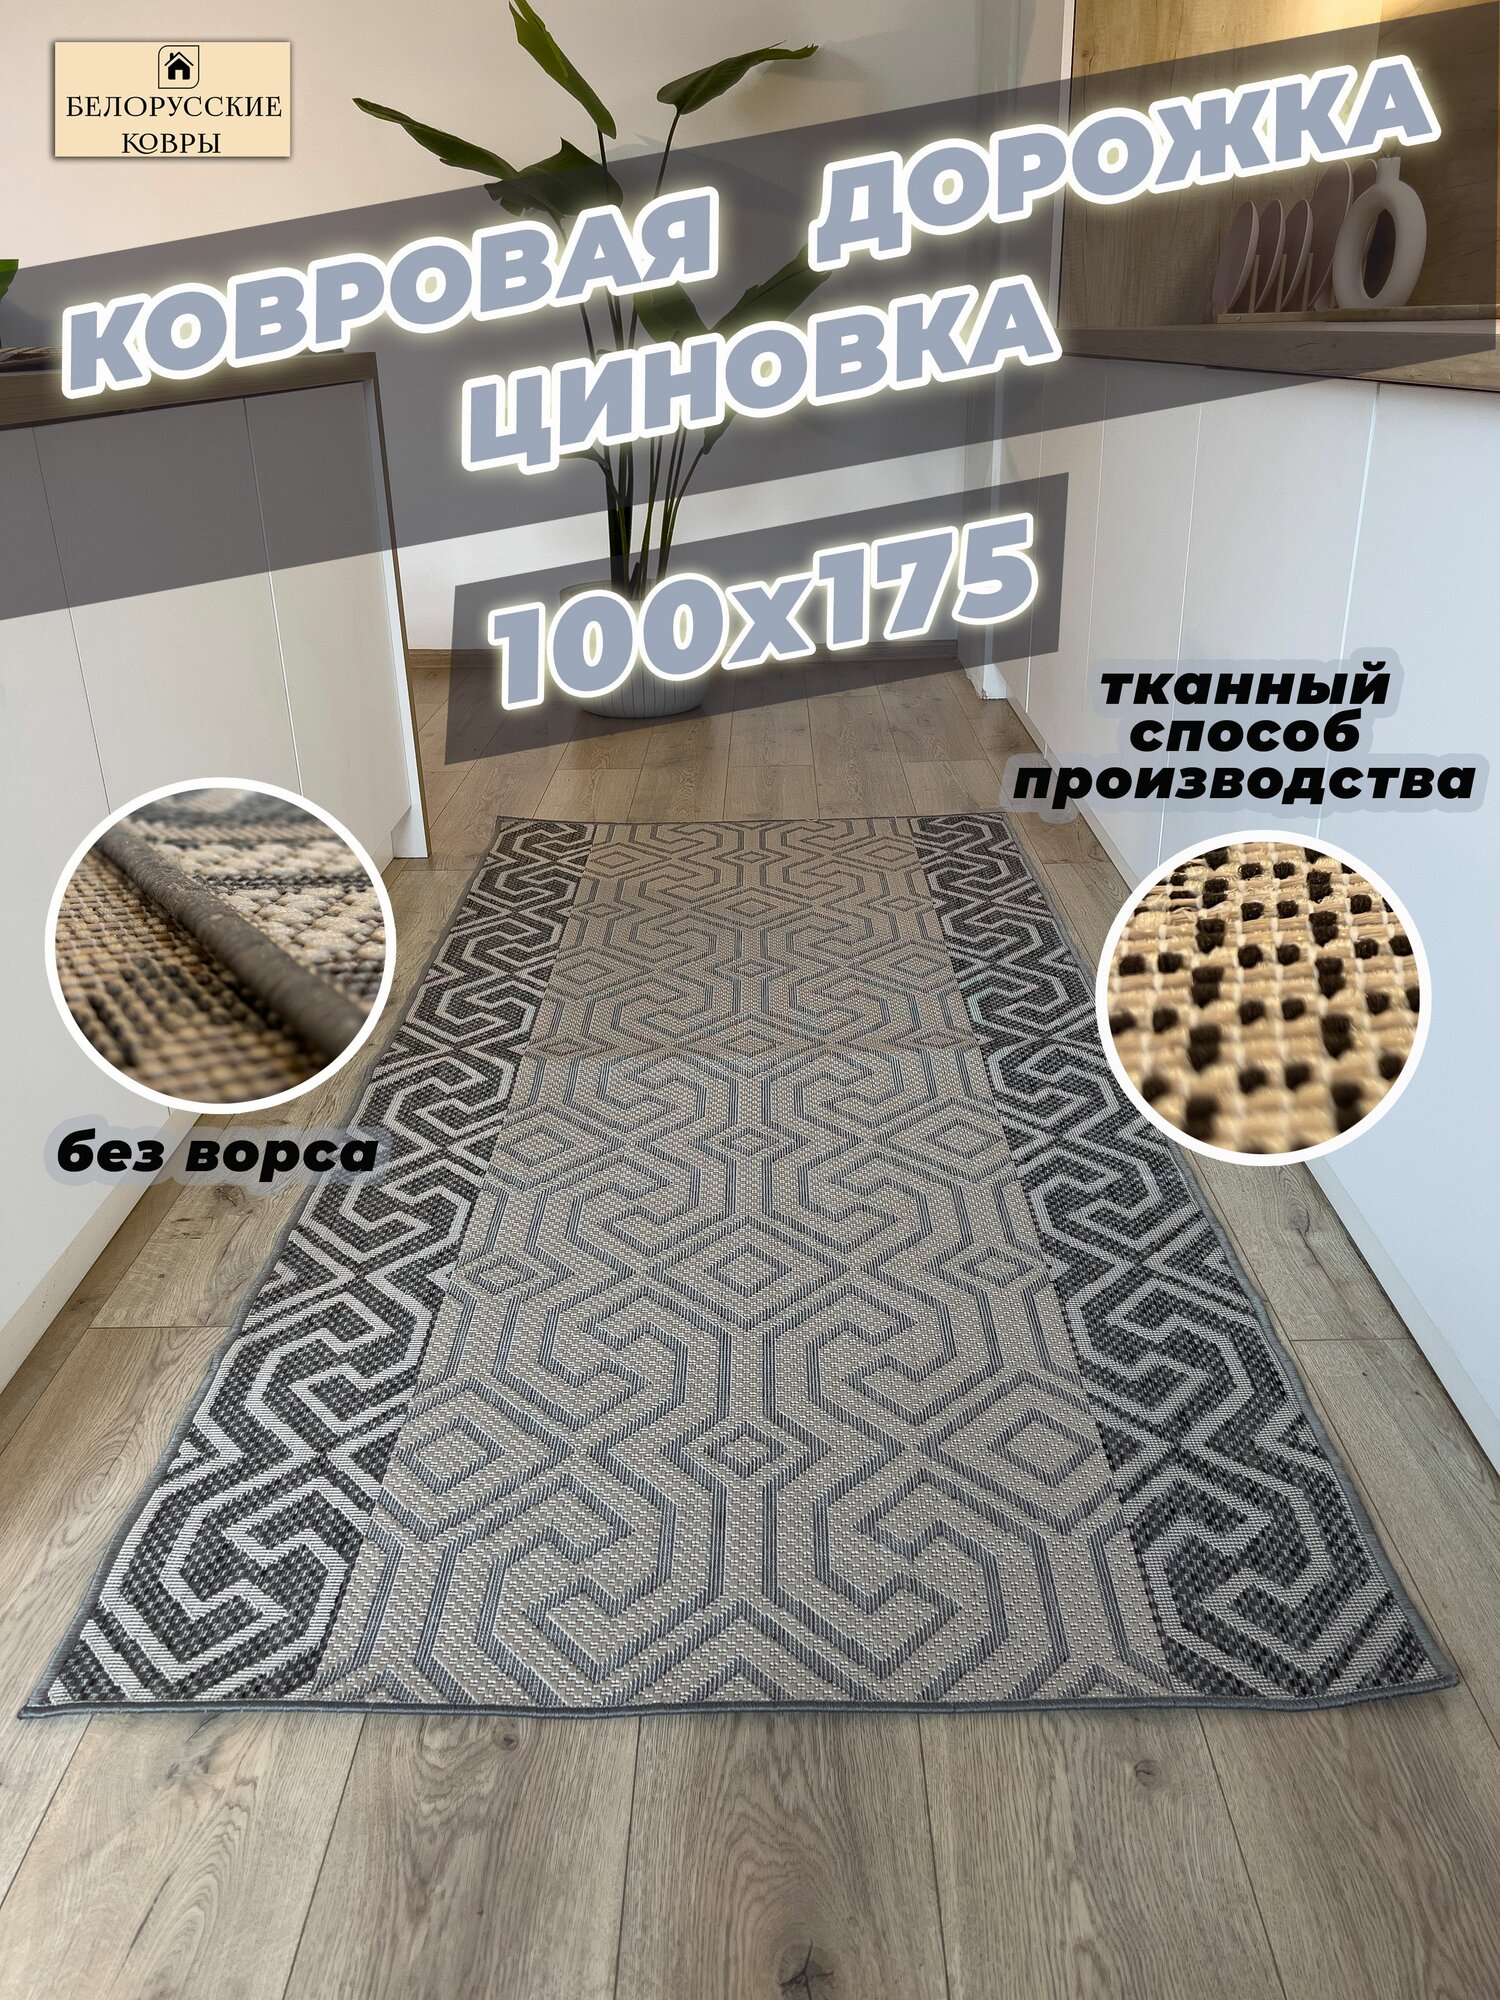 Белорусские ковры ковровая дорожка циновка 100х175см./10х175м.